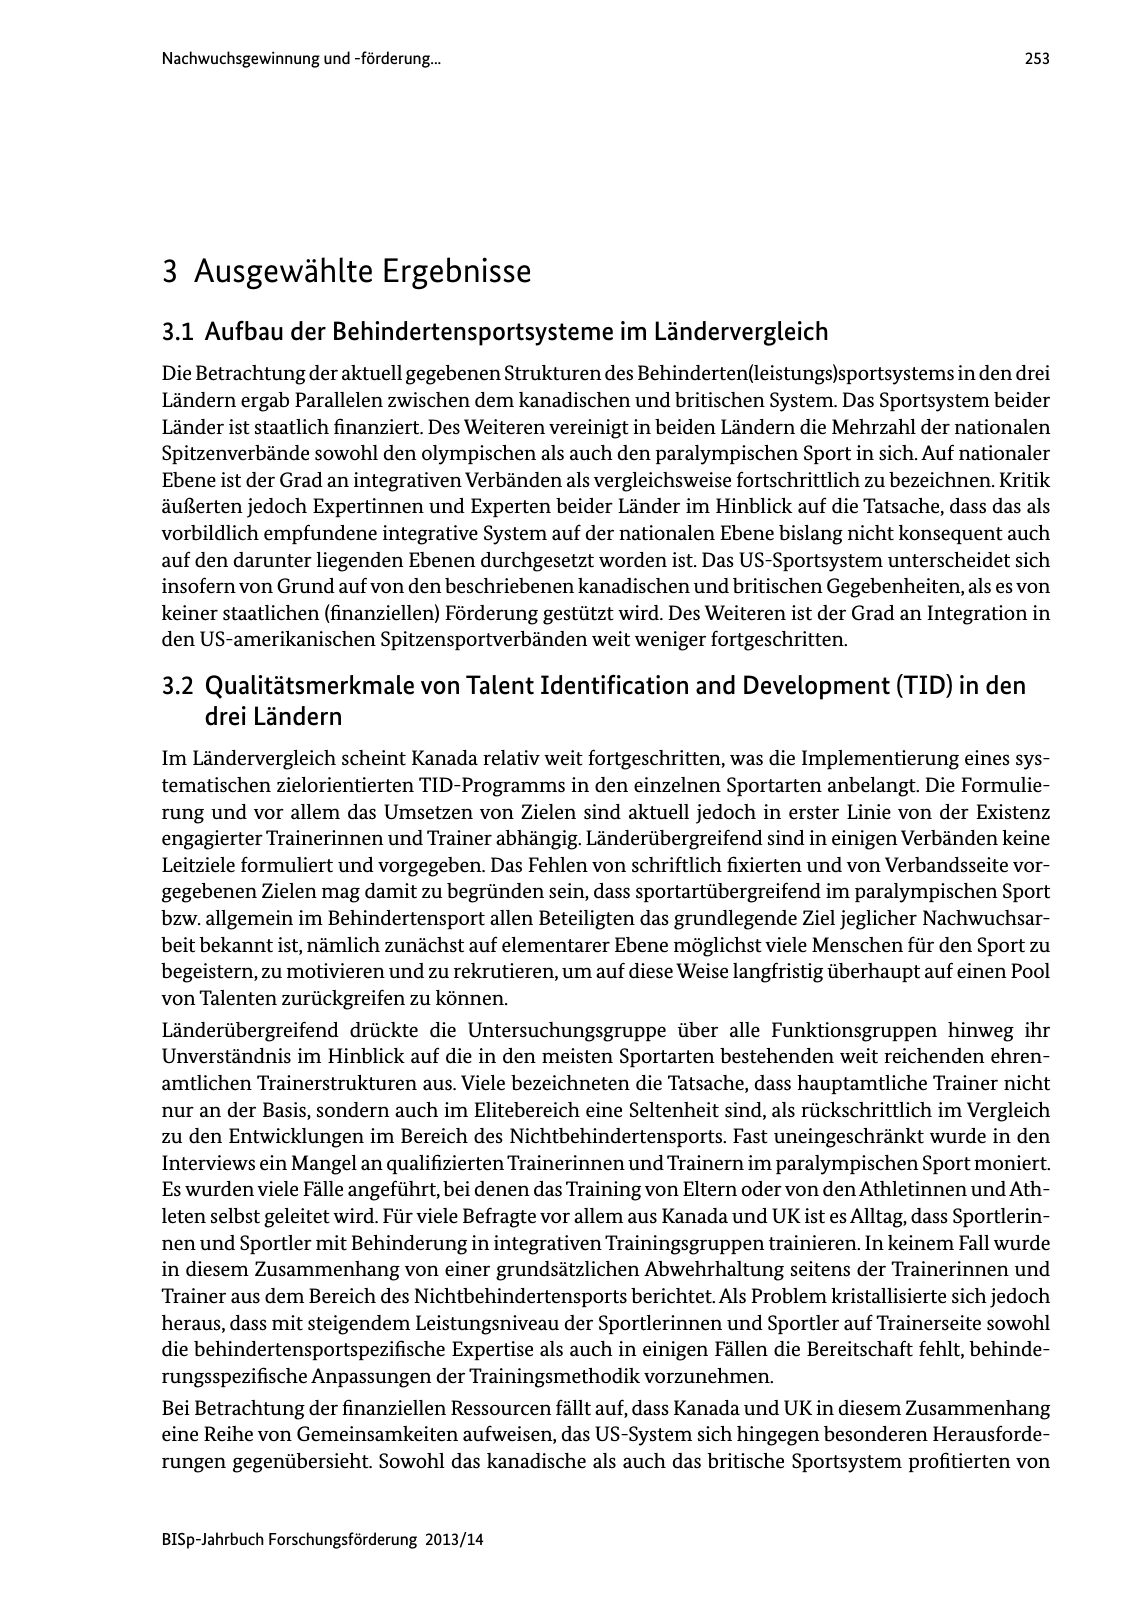 Vorschau BISp-Jahrbuch Forschungsförderung 2013/14 Seite 254